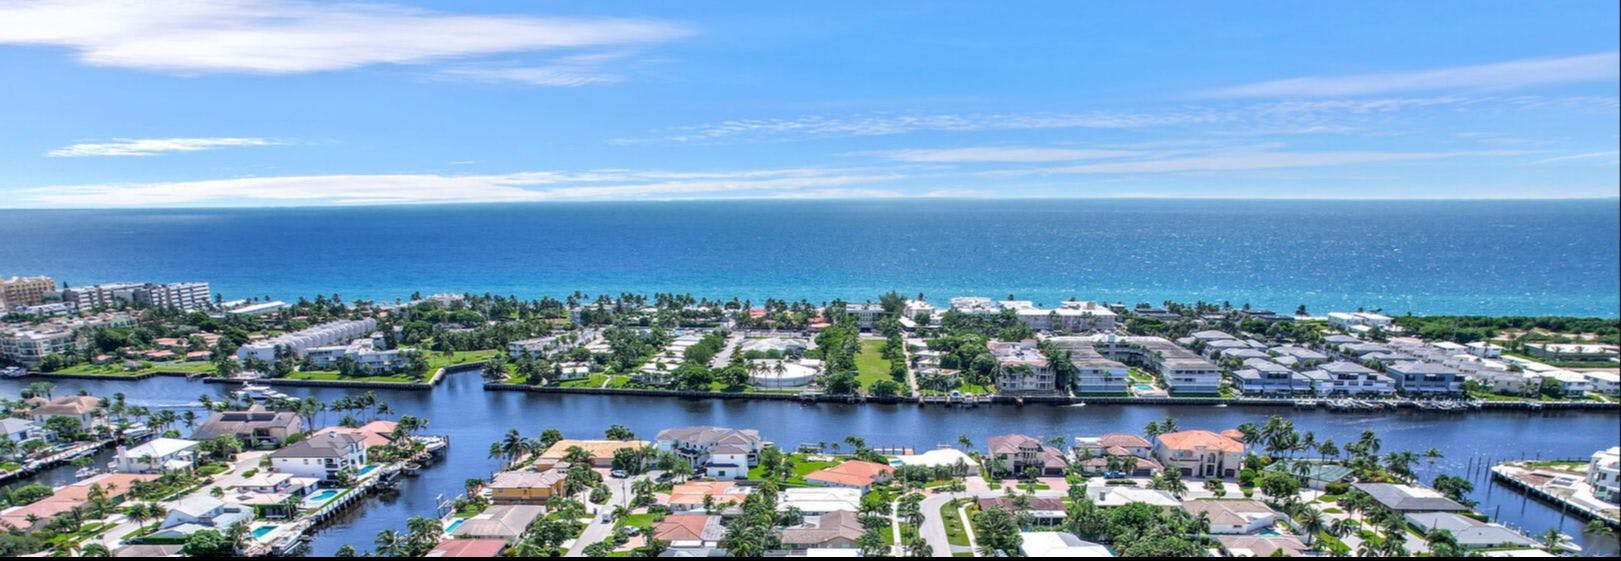 Ocean view of Deerfield Beach in Florida